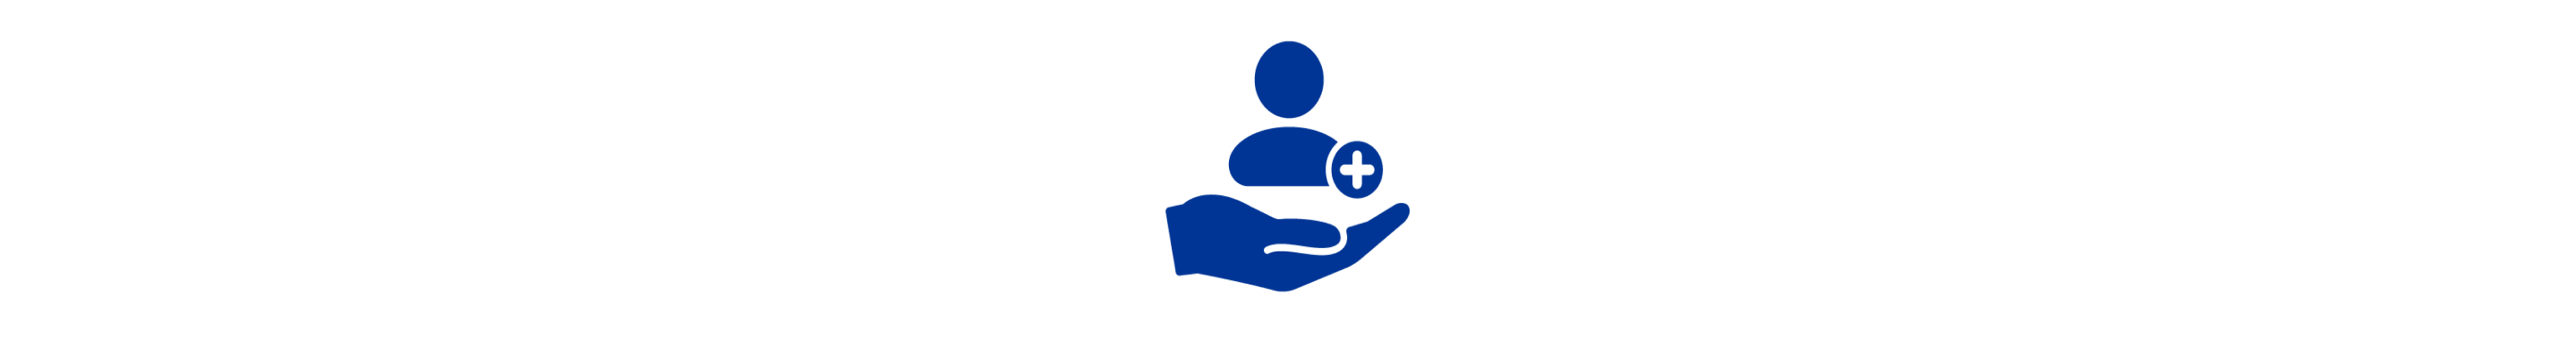 Une icône bleue représentant une main soutenant une personne à côté d'une croix bleue